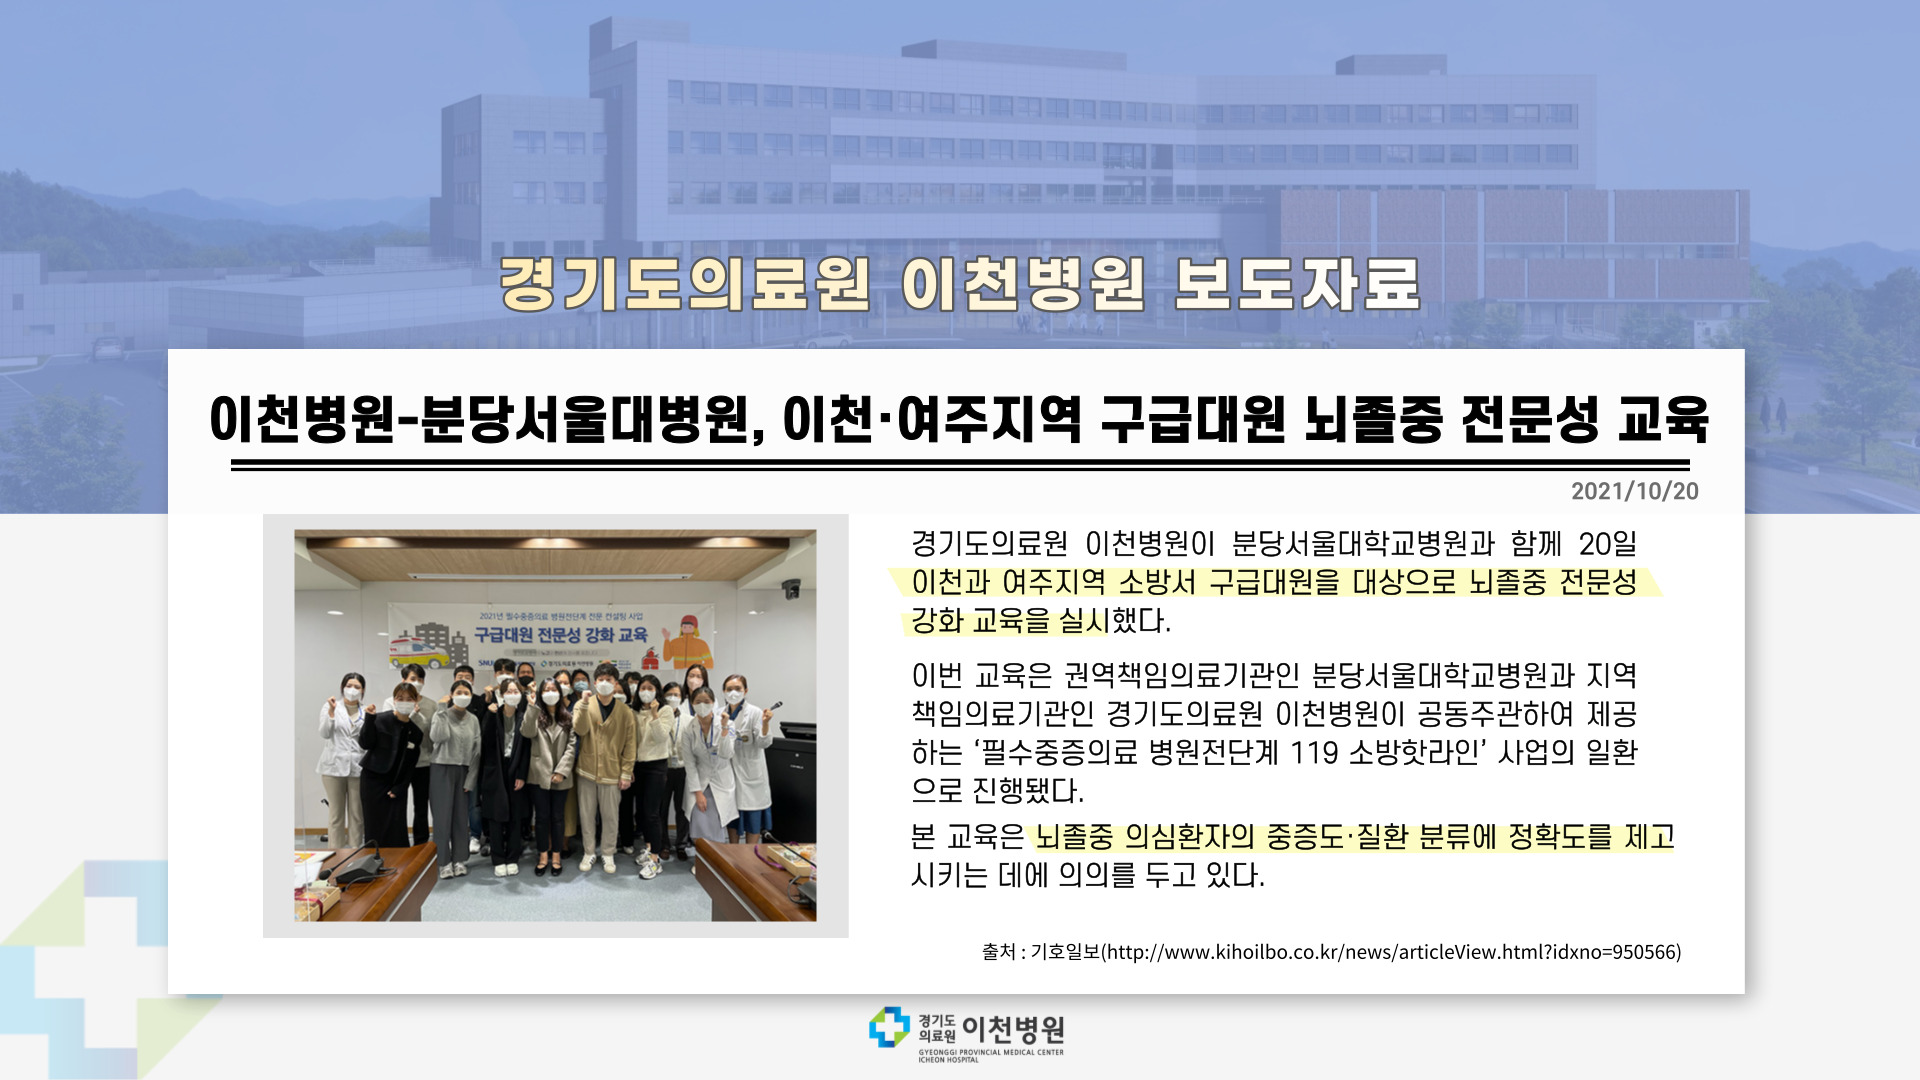 이천병원-분당서울대학교병원, 이천·여주지역 구급대원 뇌졸중 전문성 교육